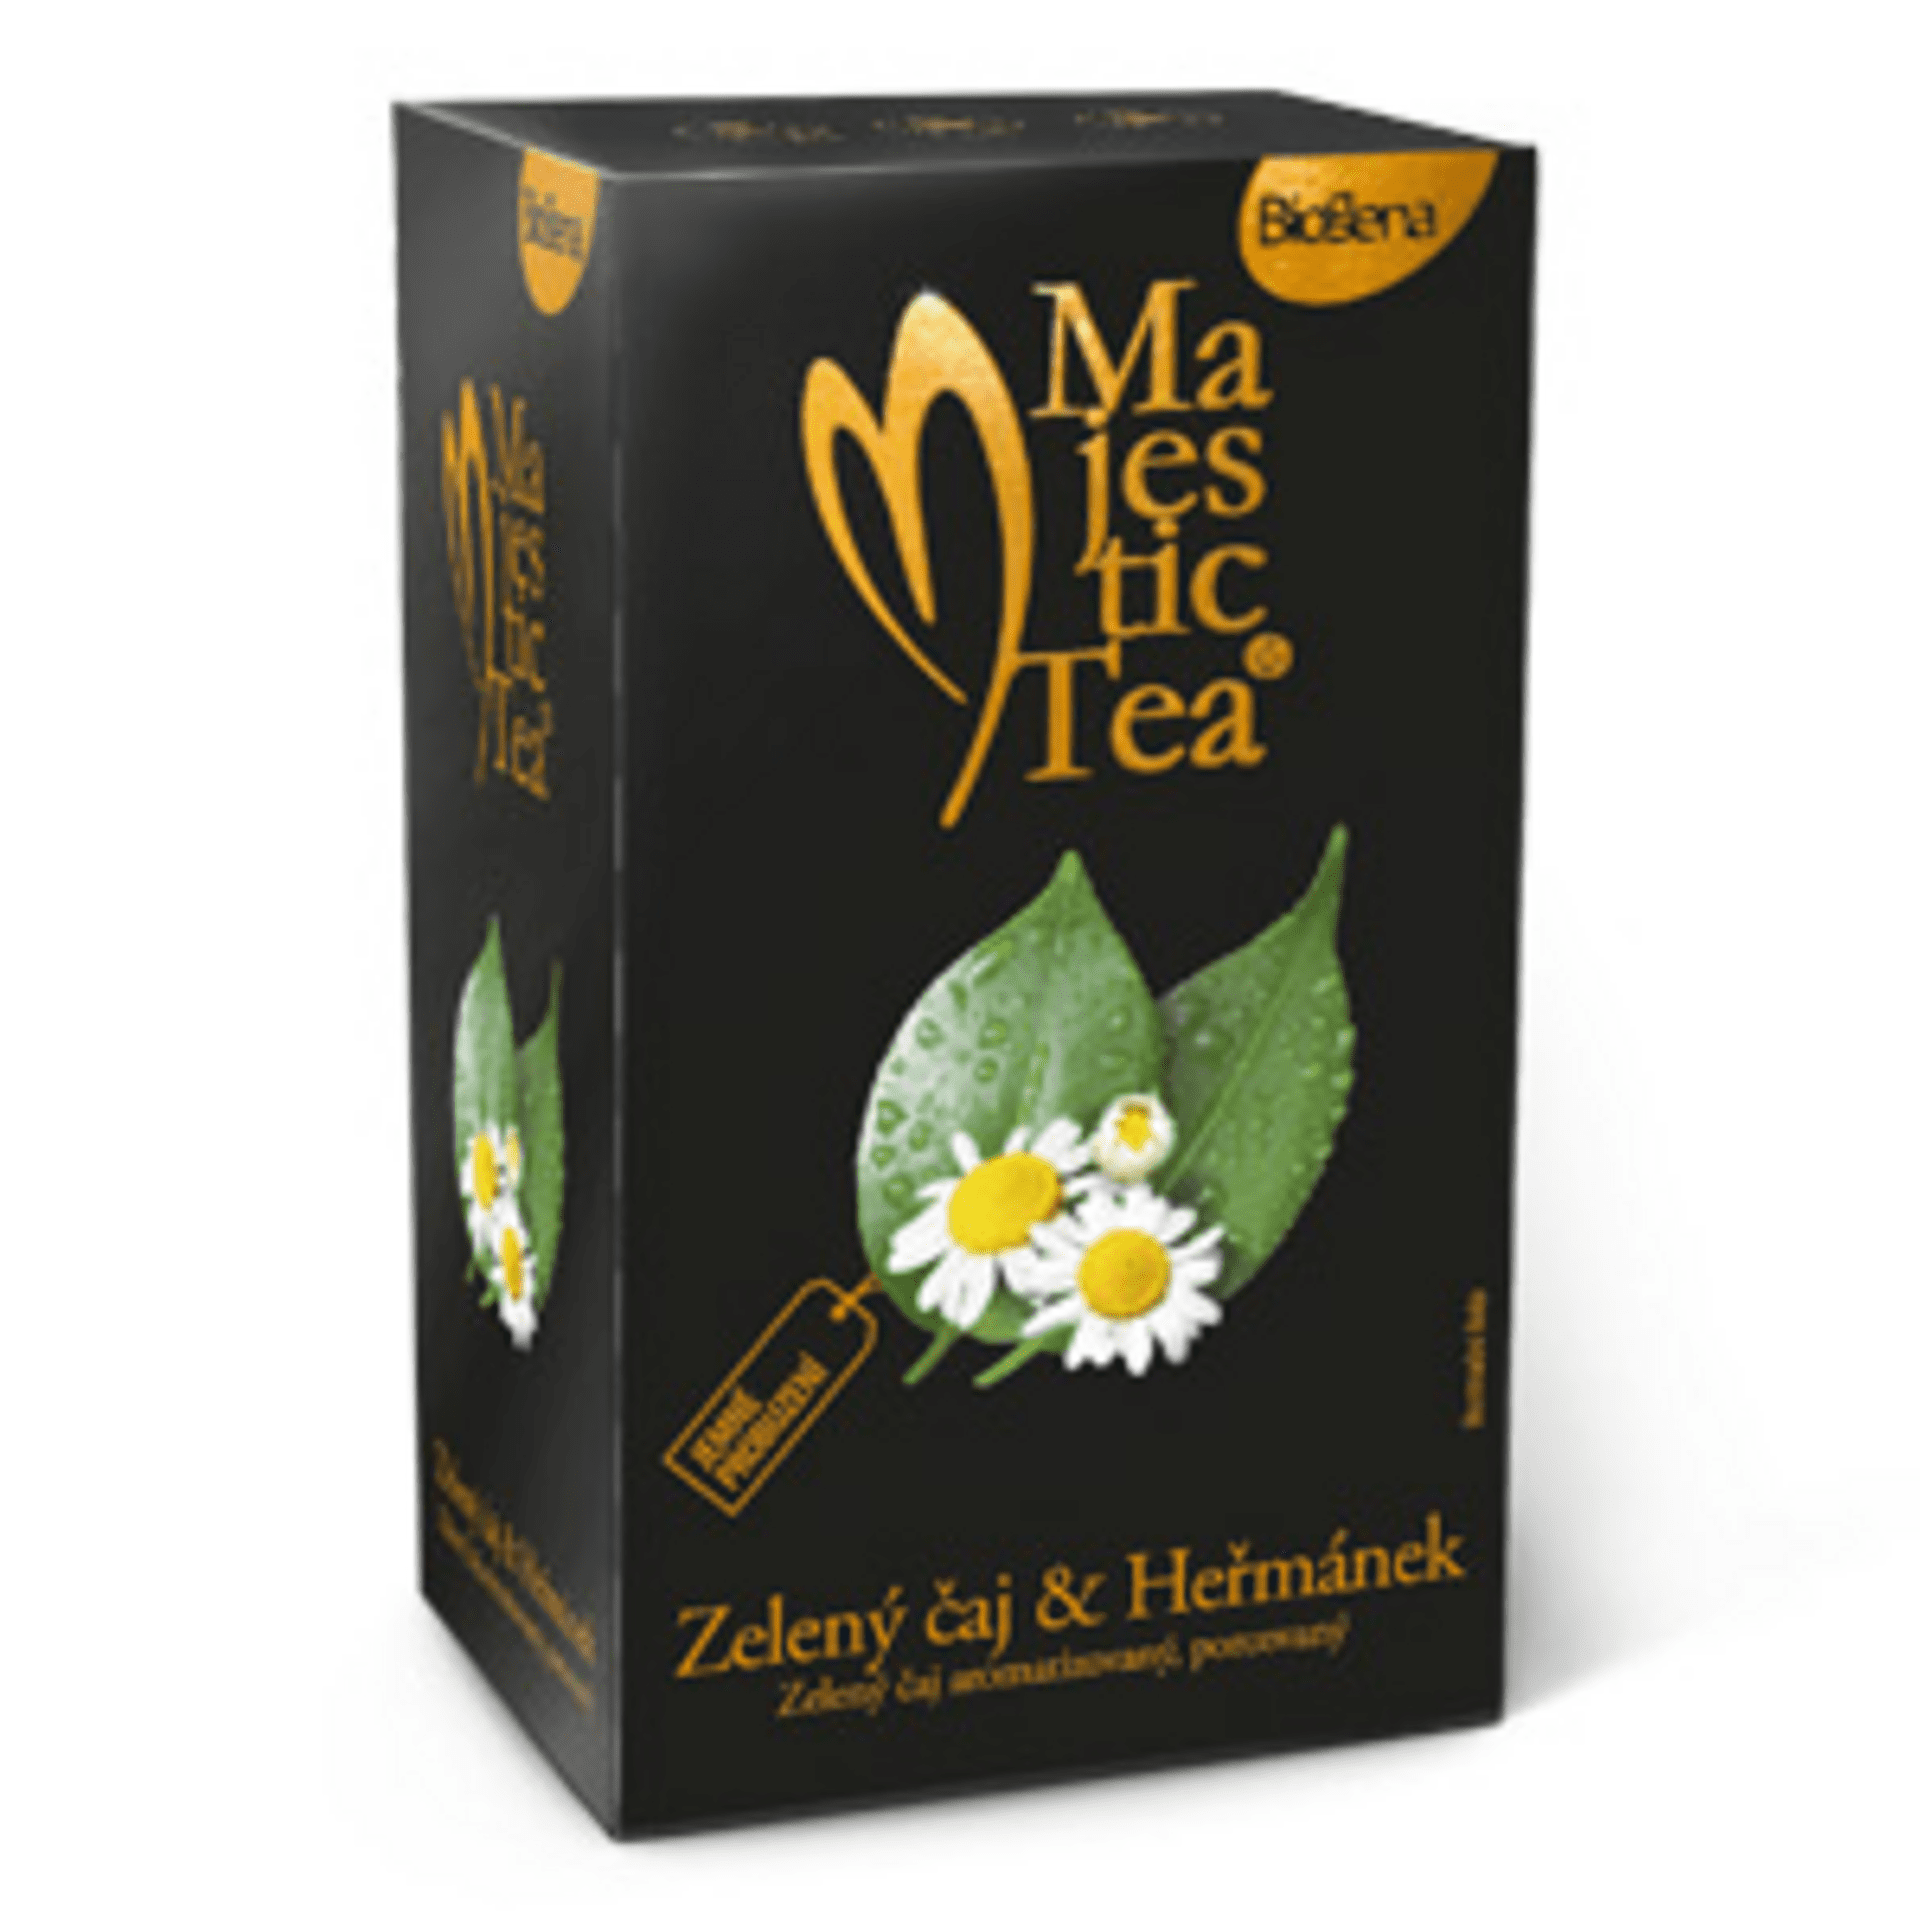 Biogena Majestic Tea Zelený čaj - Heřmánek 20 x 1,5 g